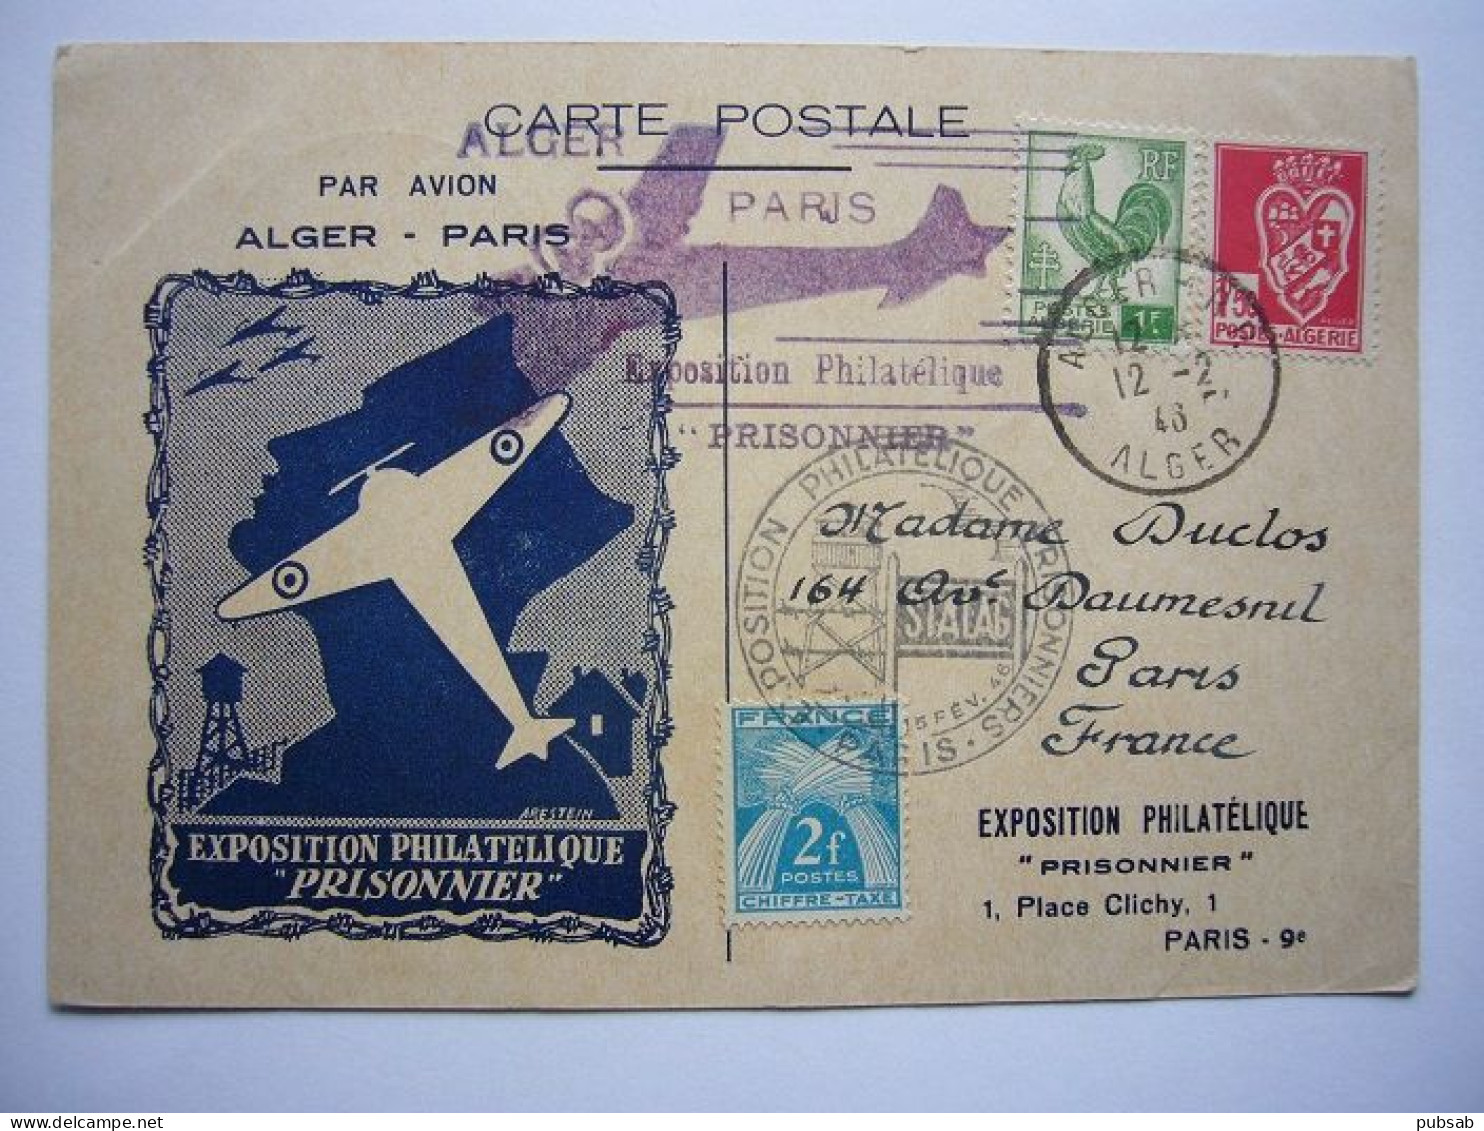 Avion / Airplane / Exposition Philatélique PRISONNIER / Par Avion Alger - Paris / 12.02.43. - 1939-1945: 2ème Guerre